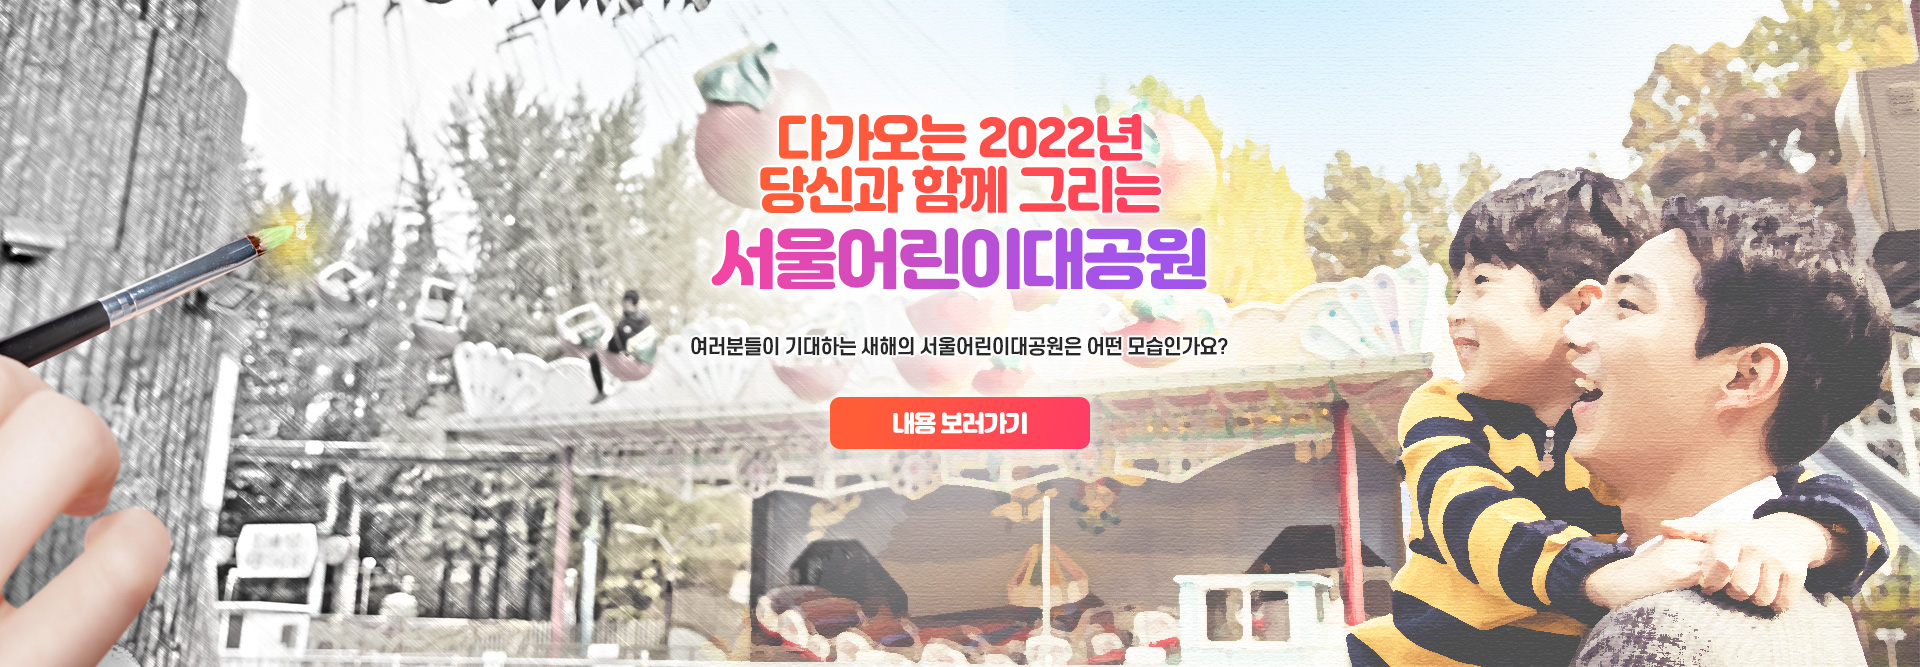 다가오는 2022년
당신과 함께 그리는
서울어린이대공원
여러분들이 기대하는 새해의 서울어린이대공원은 어떤 모습인가요?

내용 보러가기